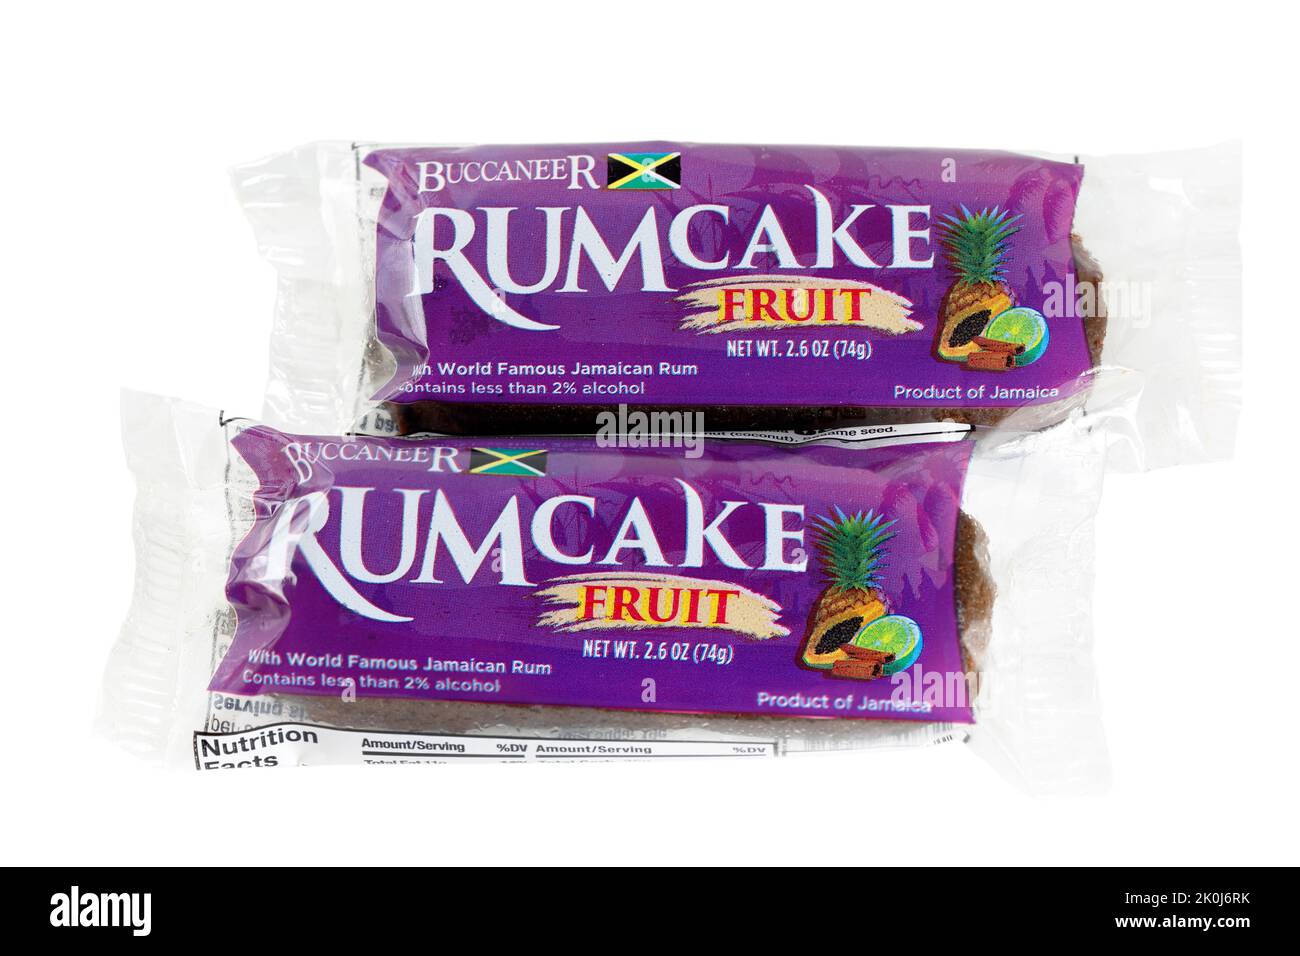 Due pezzi di Buccaneer Rum Cake, frutta rumcake isolato su uno sfondo bianco. Immagine ritagliata per l'illustrazione e l'uso editoriale Foto Stock